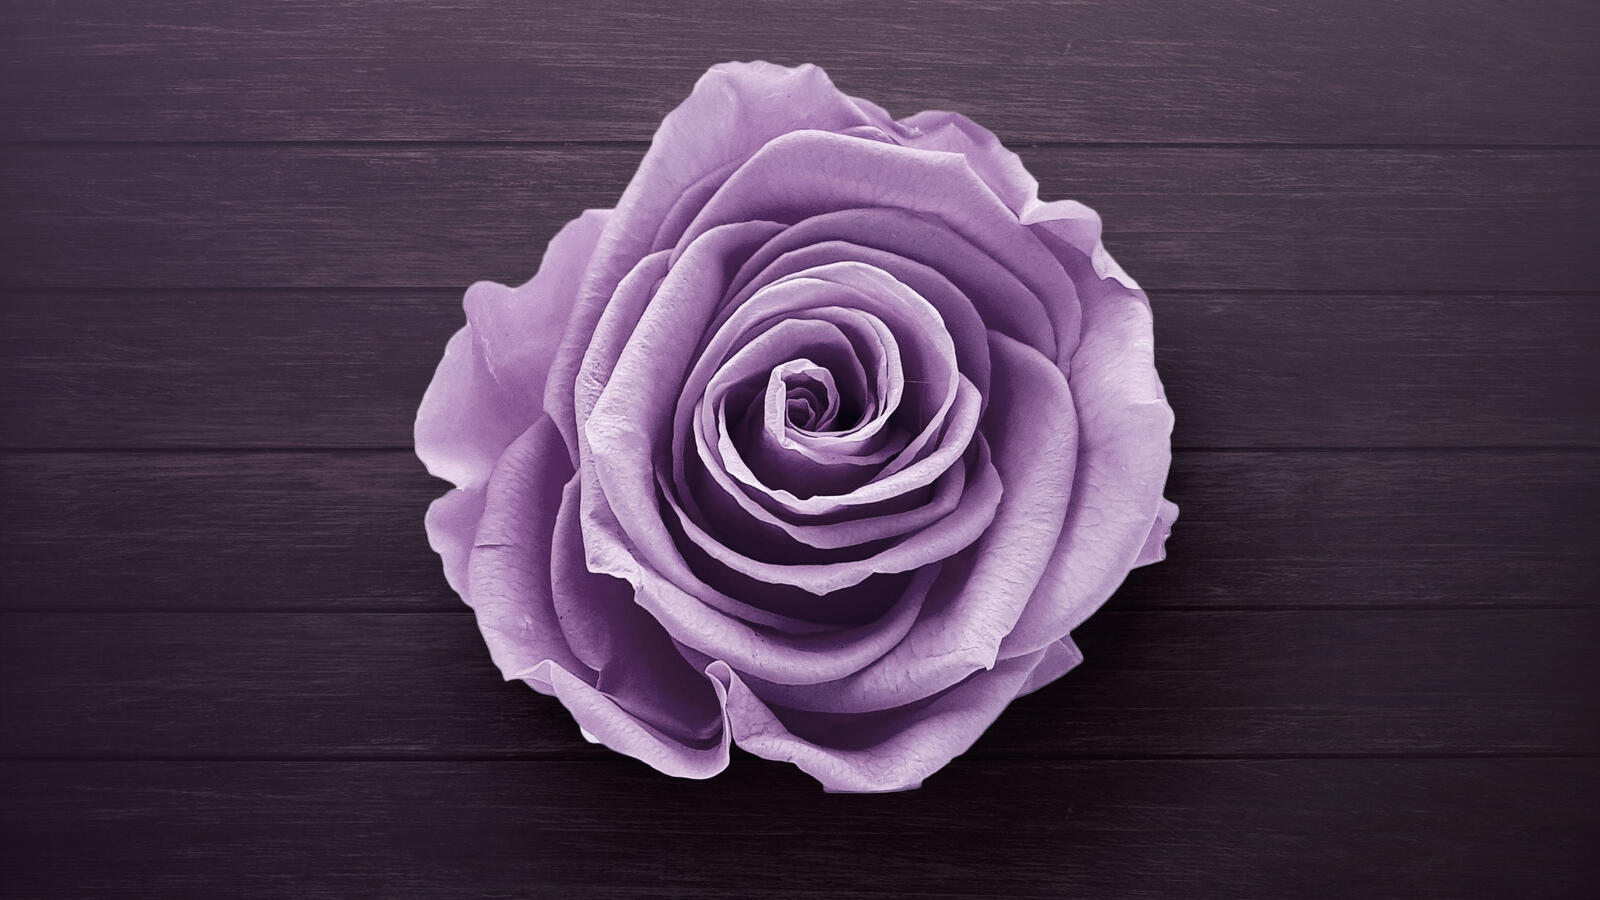 Обои роза фиолетовый бутон бутон розы на рабочий стол